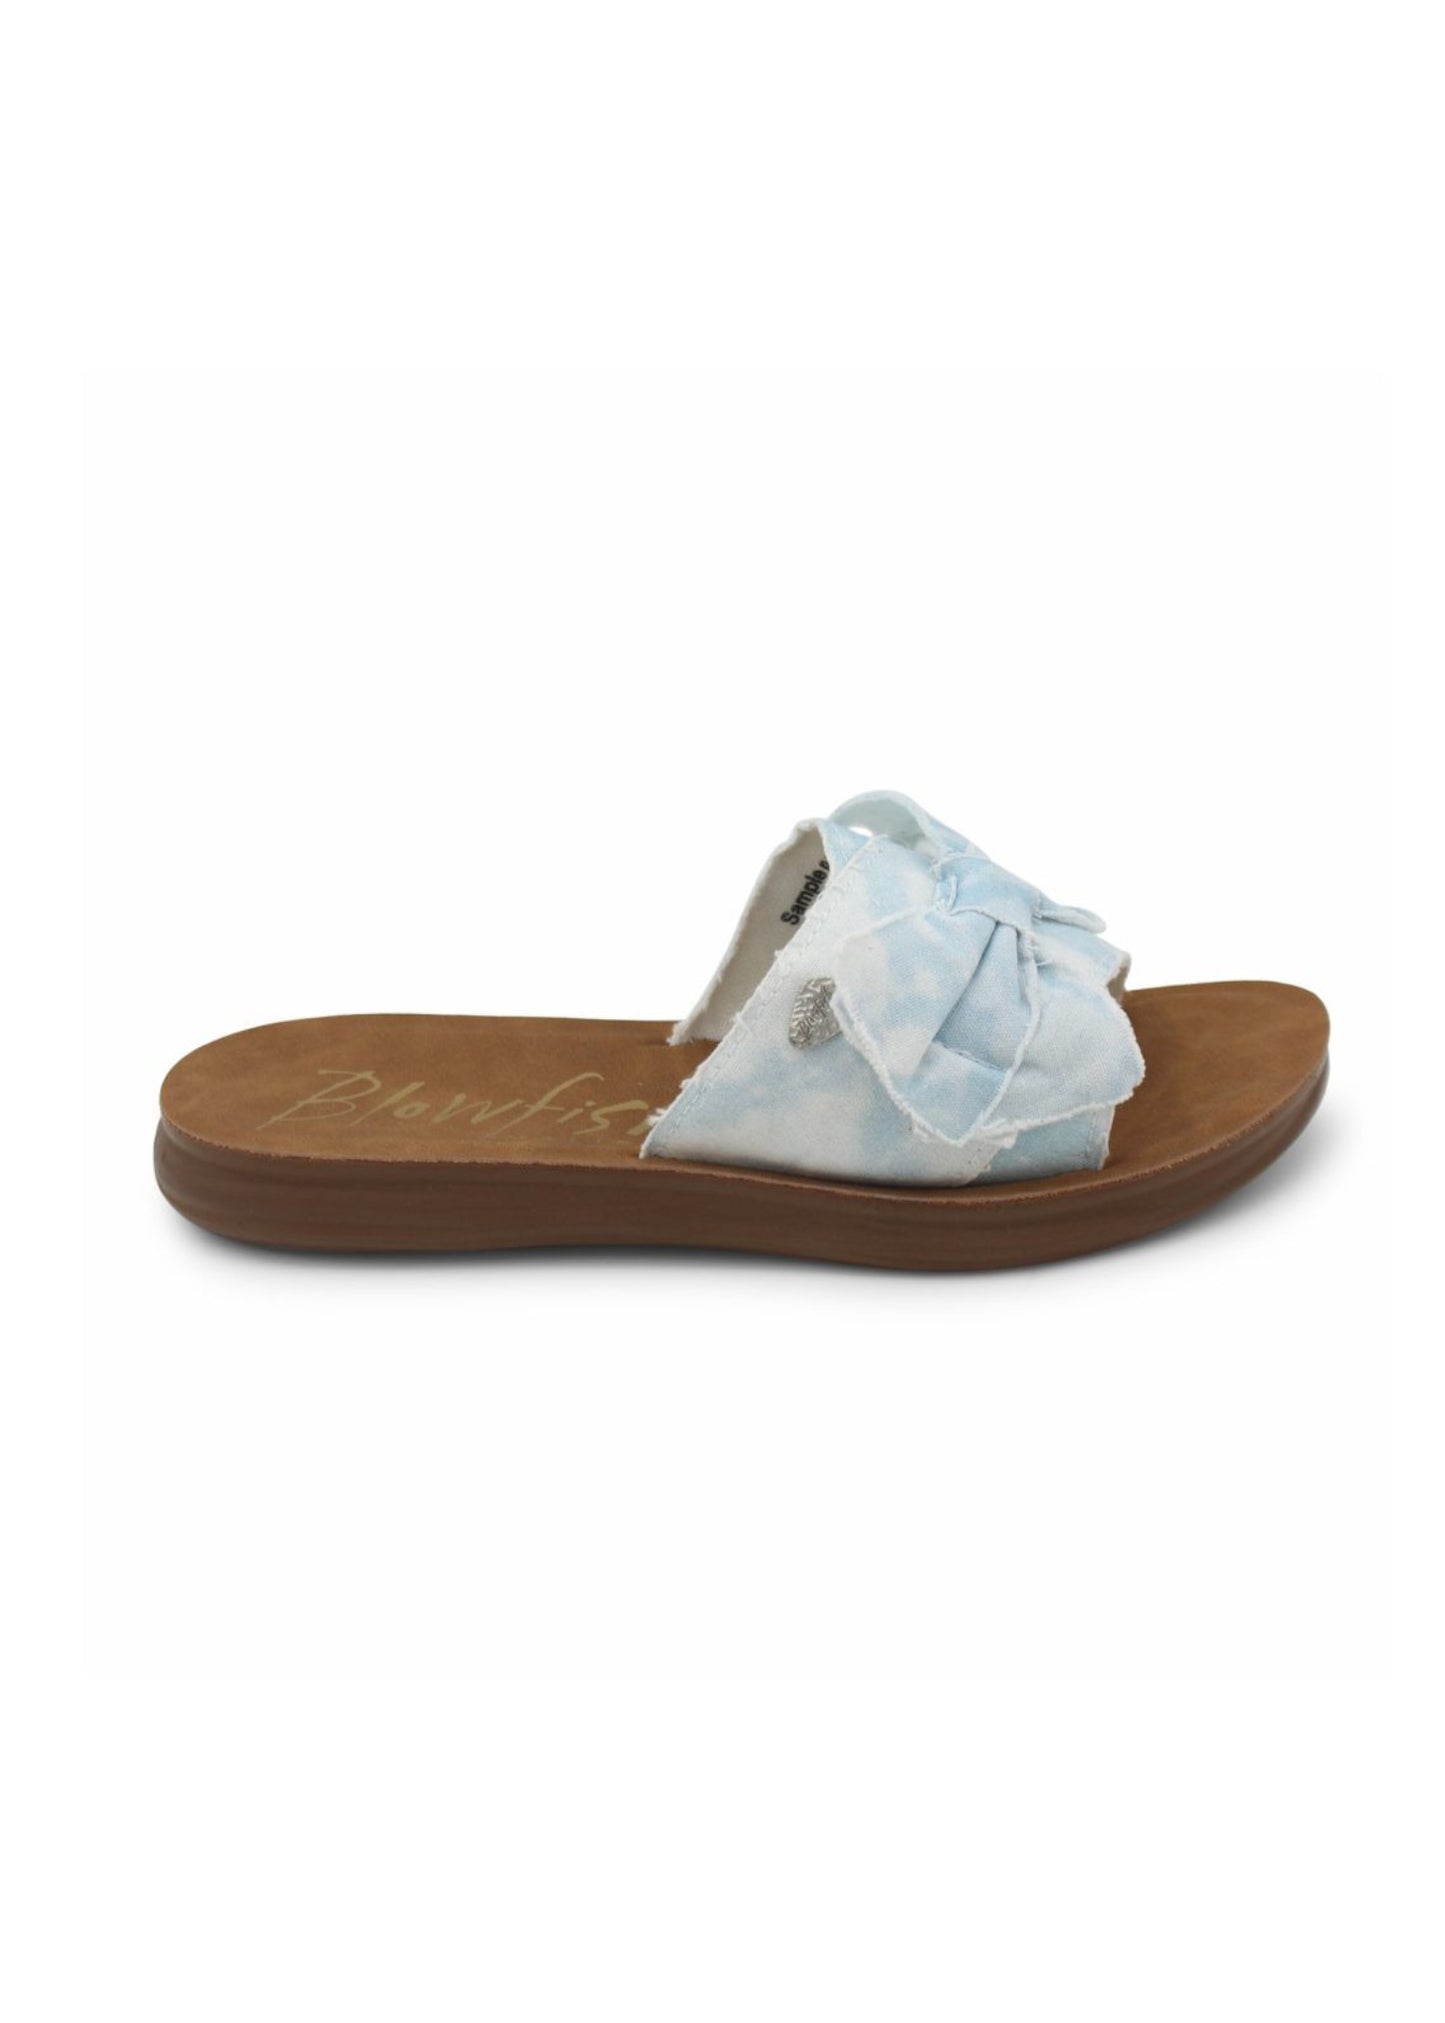 Malibu Sandal (Assorted Colors)